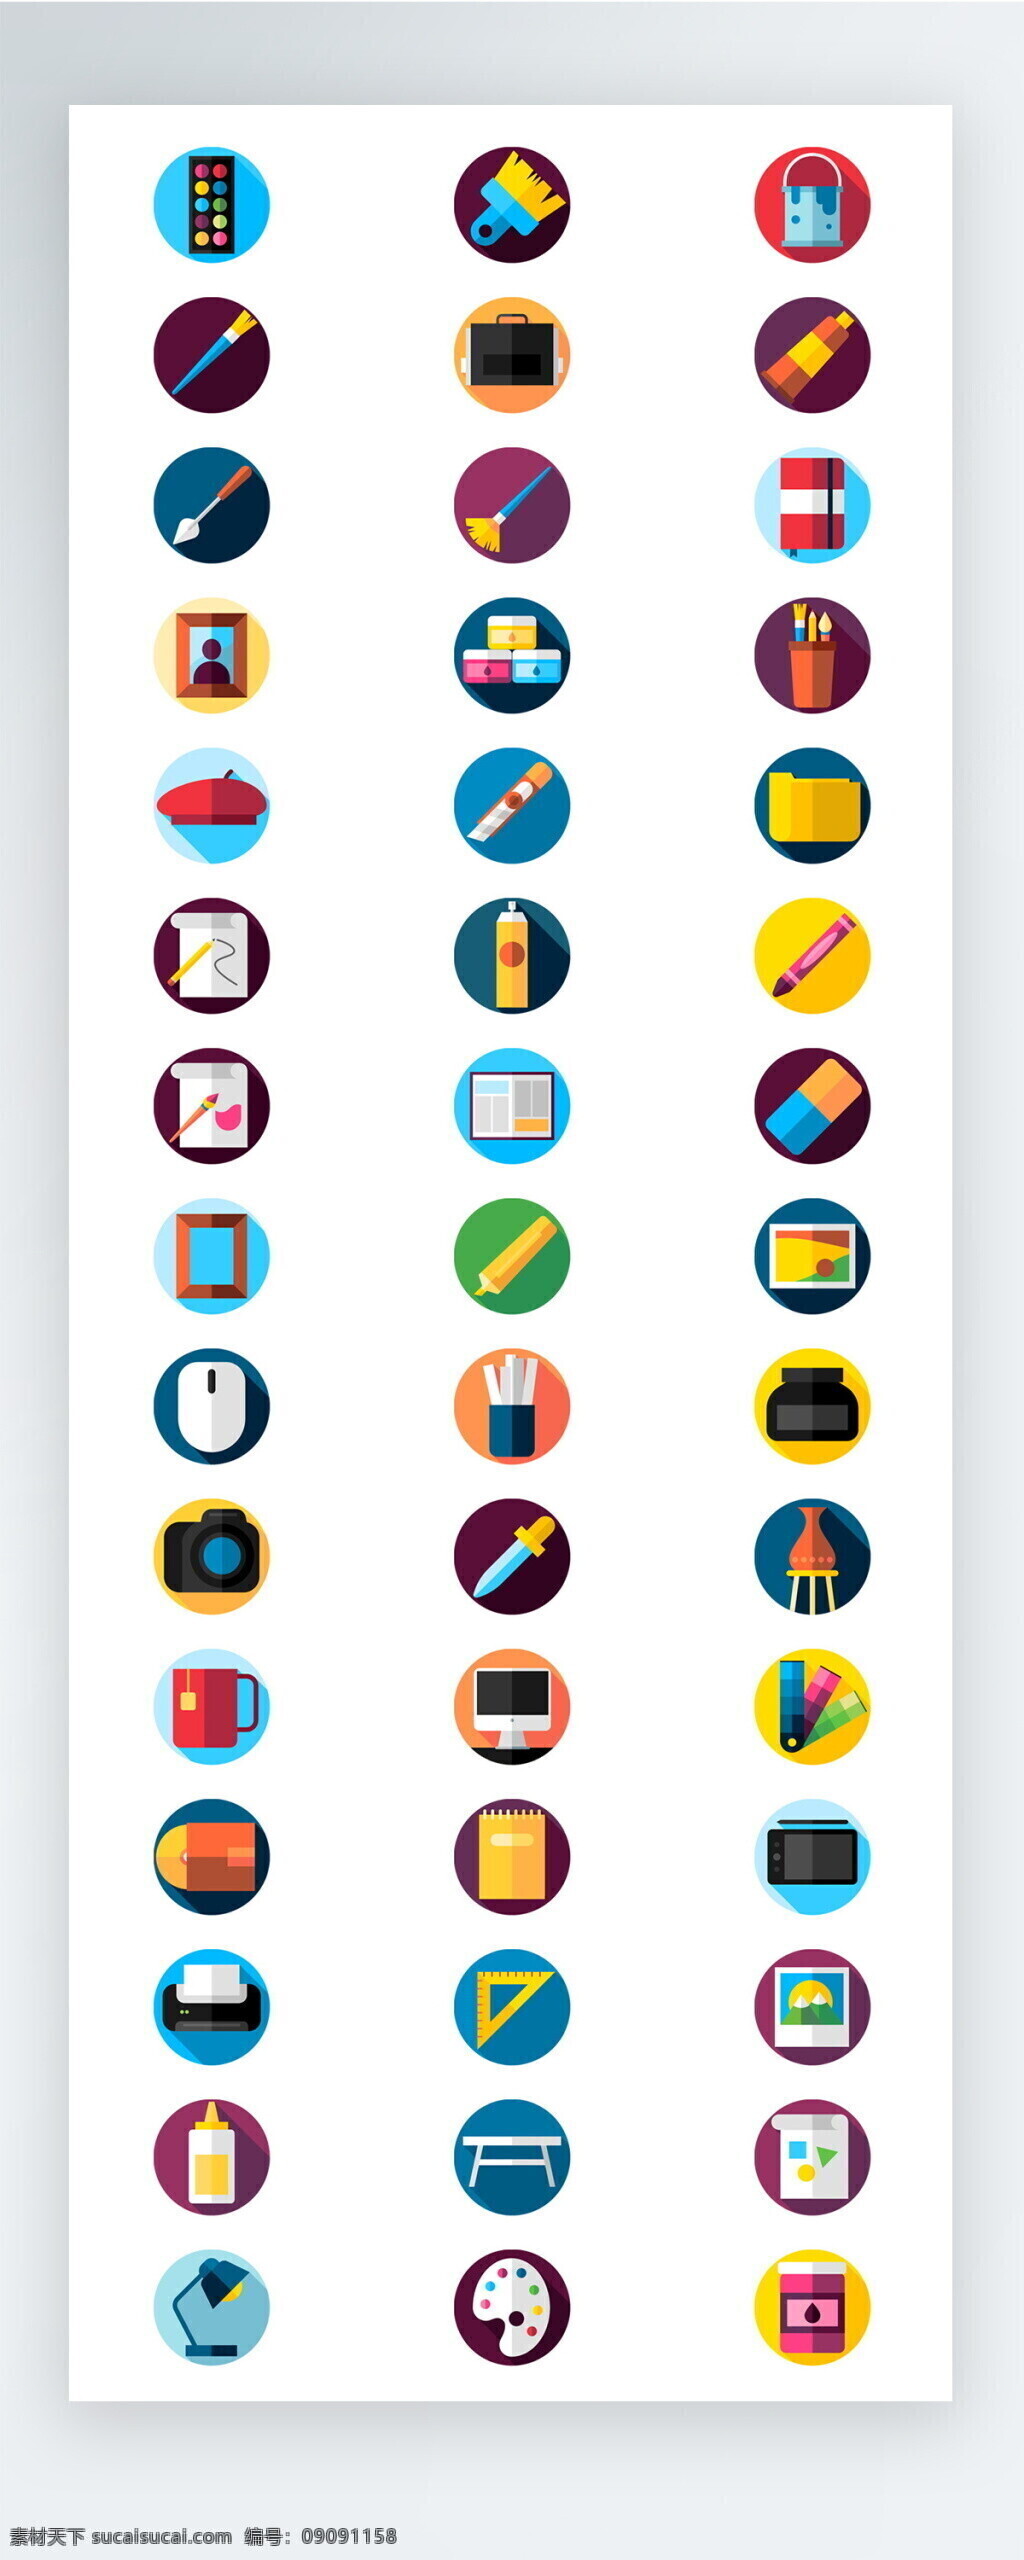 彩色 教育 学习 图标 矢量 icon icon图标 ui 手机 拟物 绘画 尺子